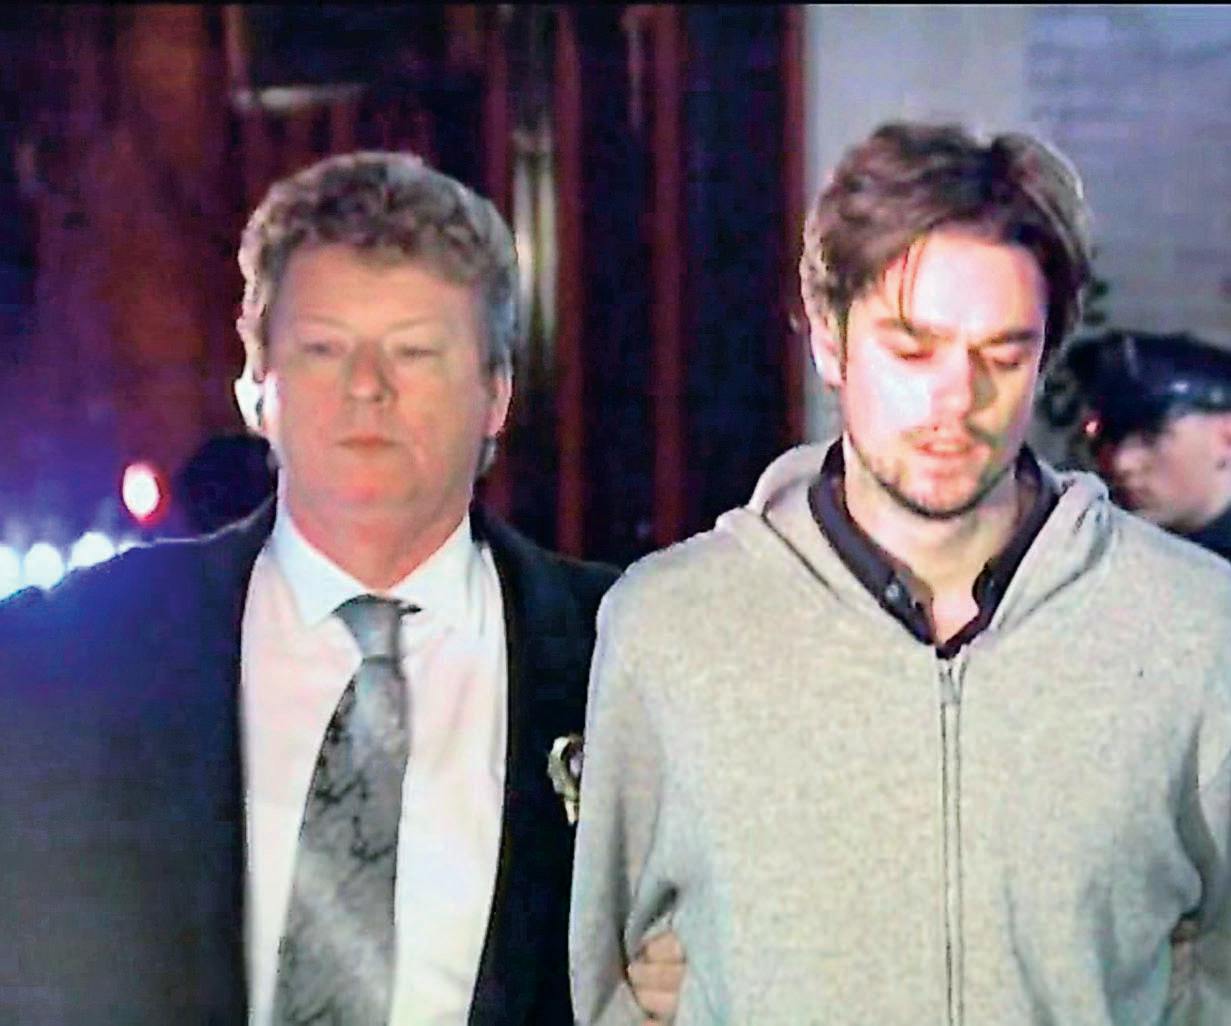 Nicholas Brooks på vej i retten, hvor han fik 25 års fængsel for mord af 2. grad.